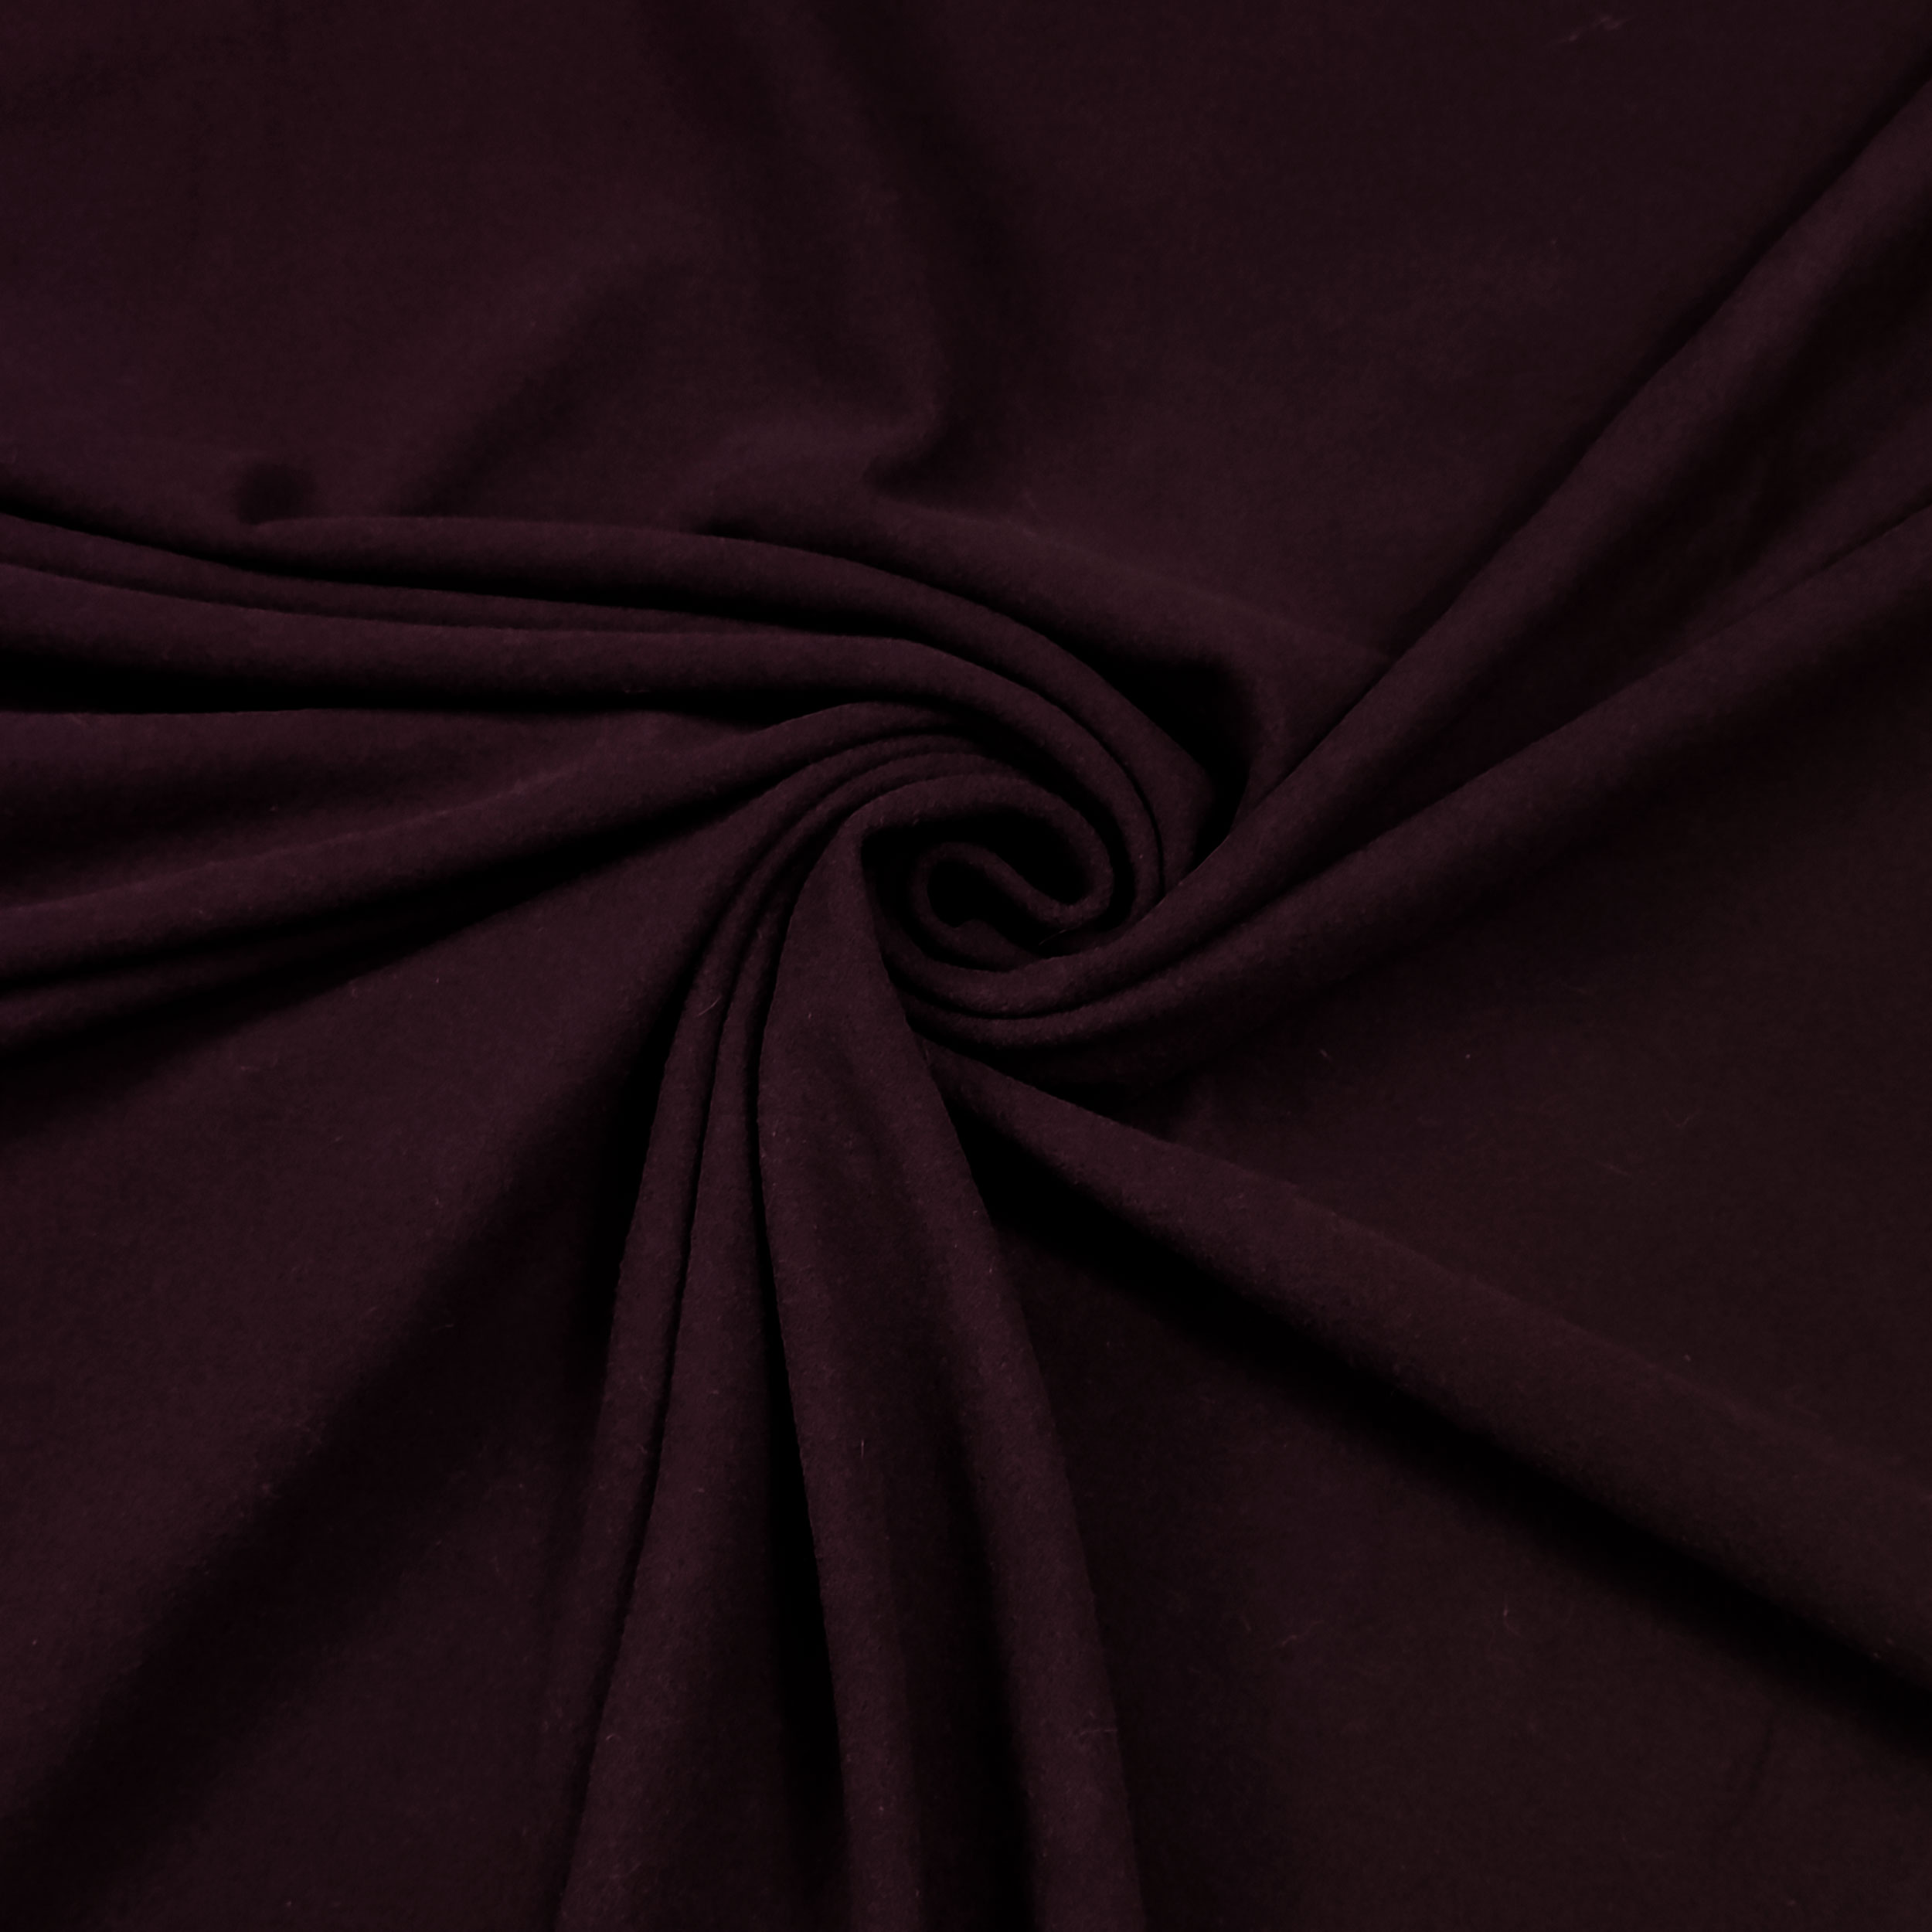 tessuto abbigliamento bordeaux scuro caldo cotone